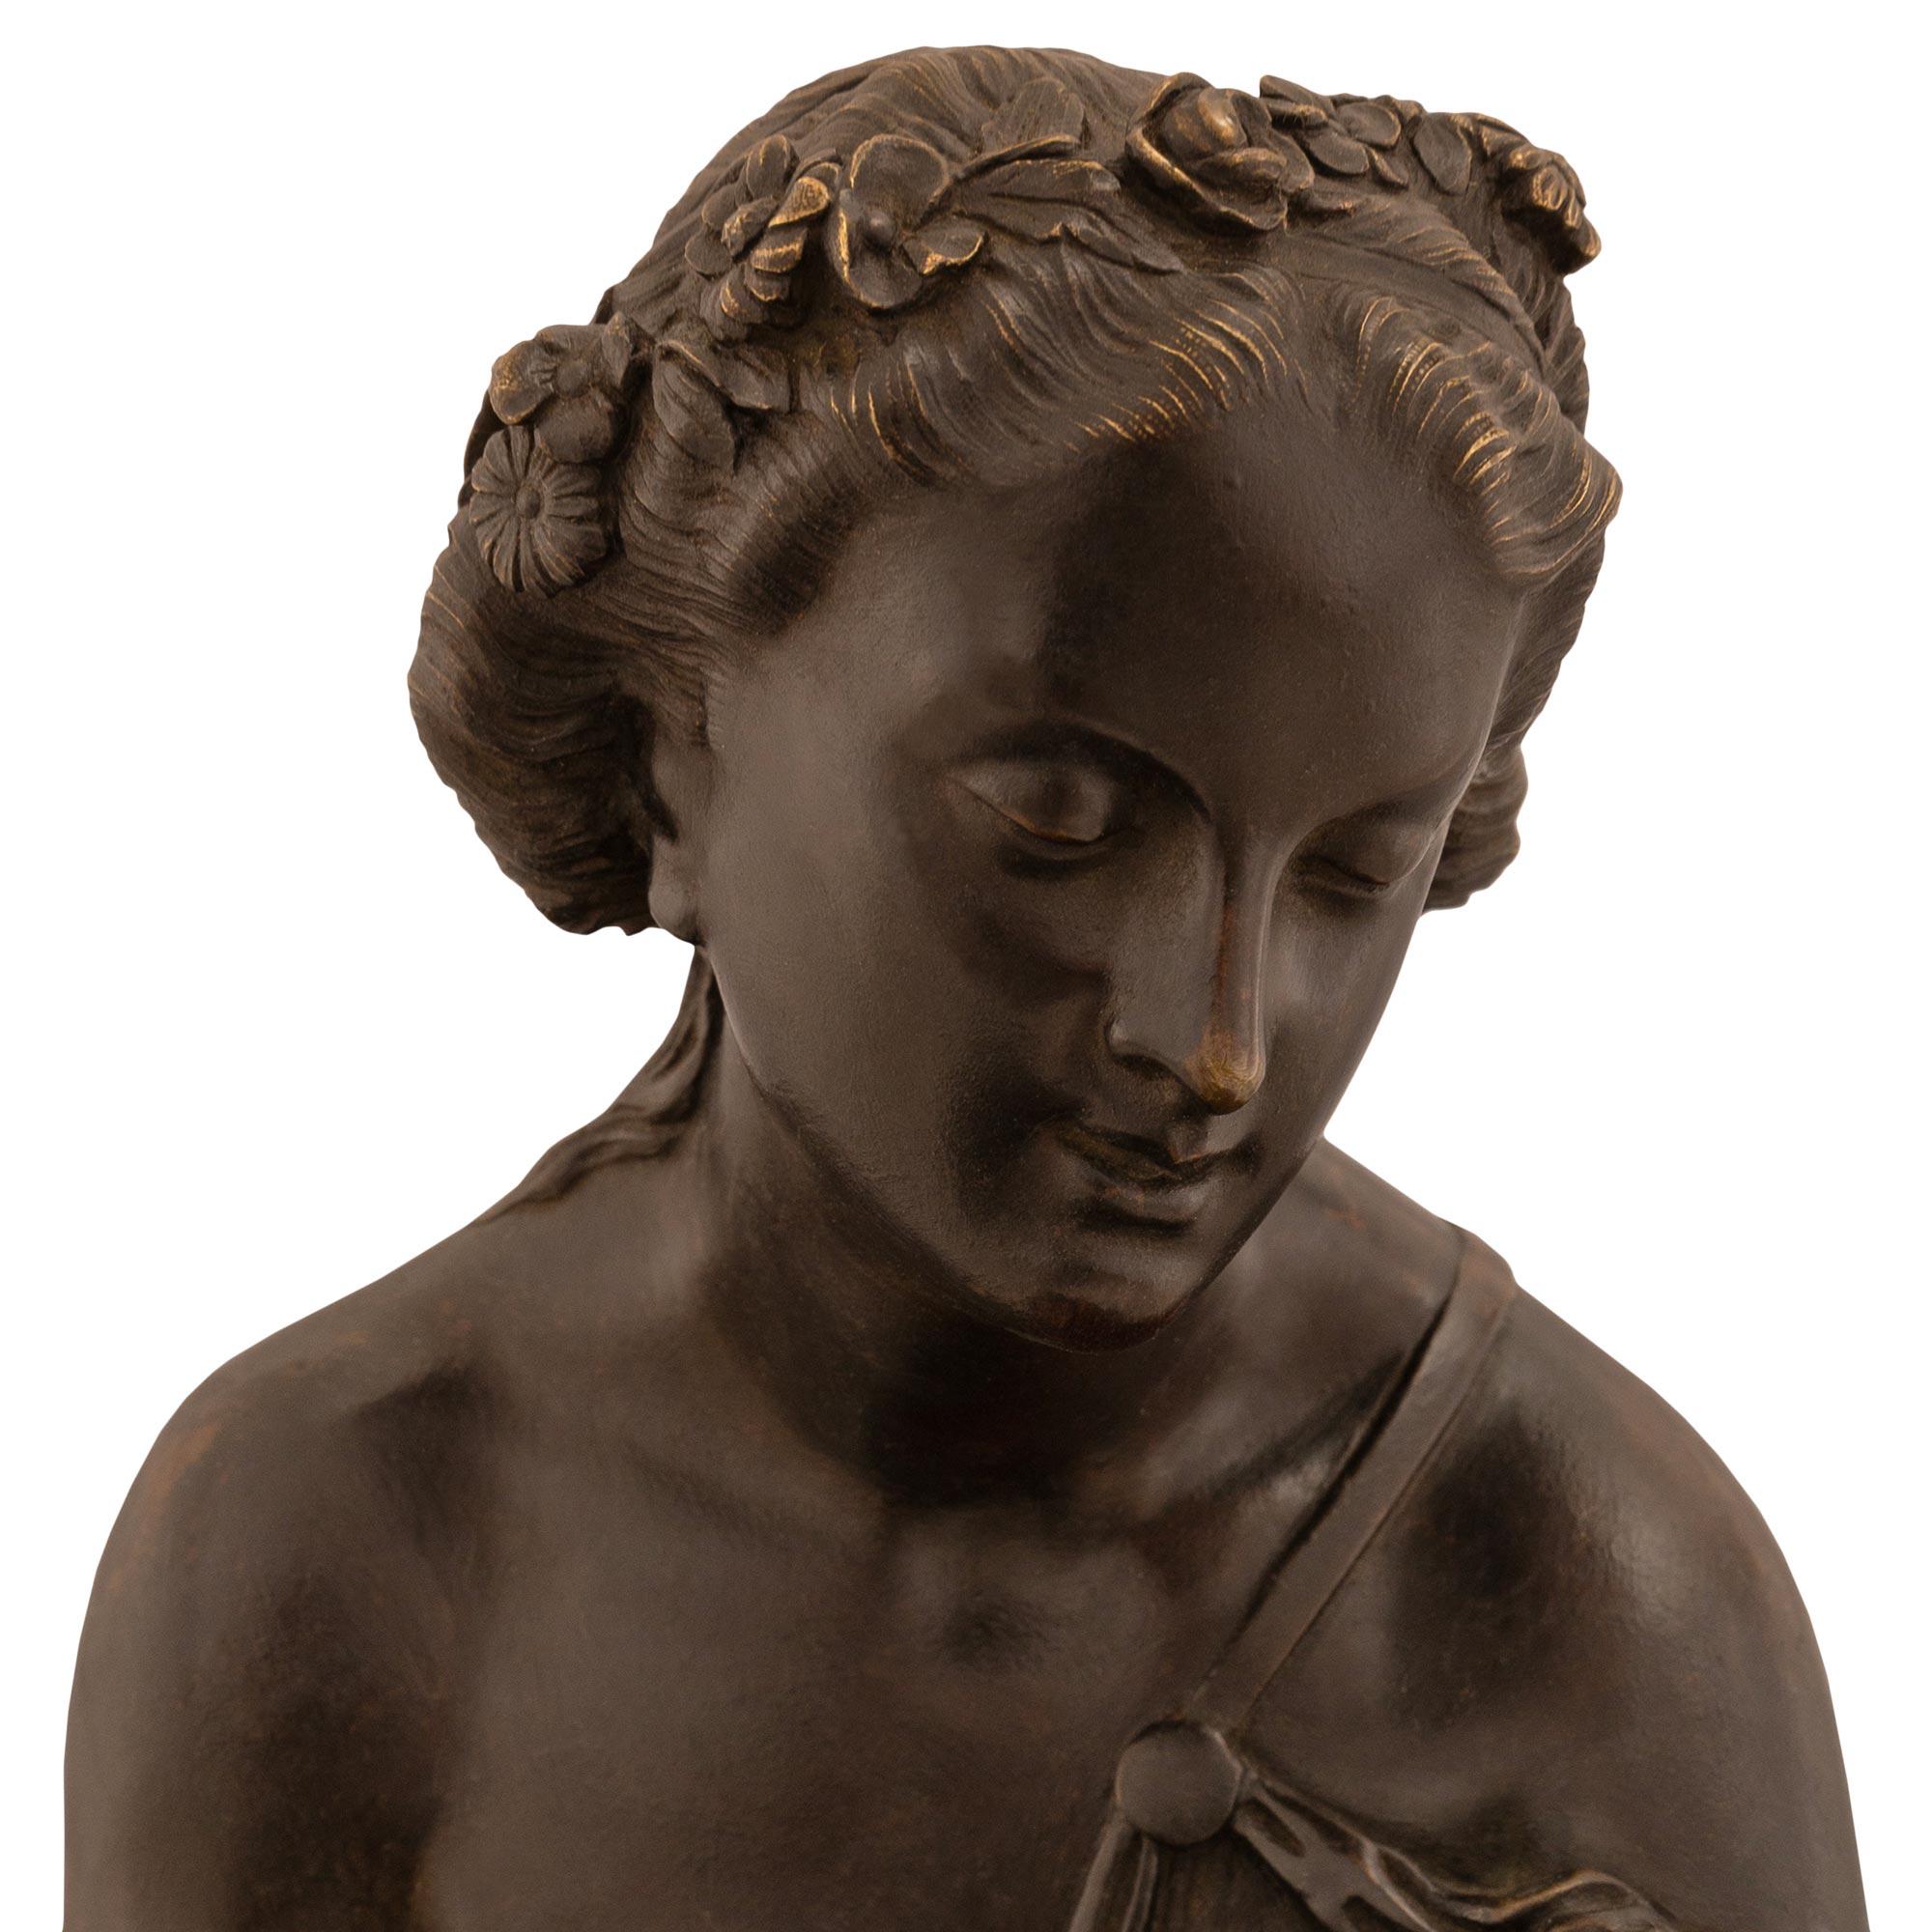 Eine französische Statue aus patinierter Bronze und schwarzem belgischem Marmor aus dem 19. Jahrhundert, signiert von Schoenewerk und Marchand. Die Statue steht auf einem ovalen Sockel aus schwarzem belgischem Marmor mit doppelt gesprenkeltem Rand.